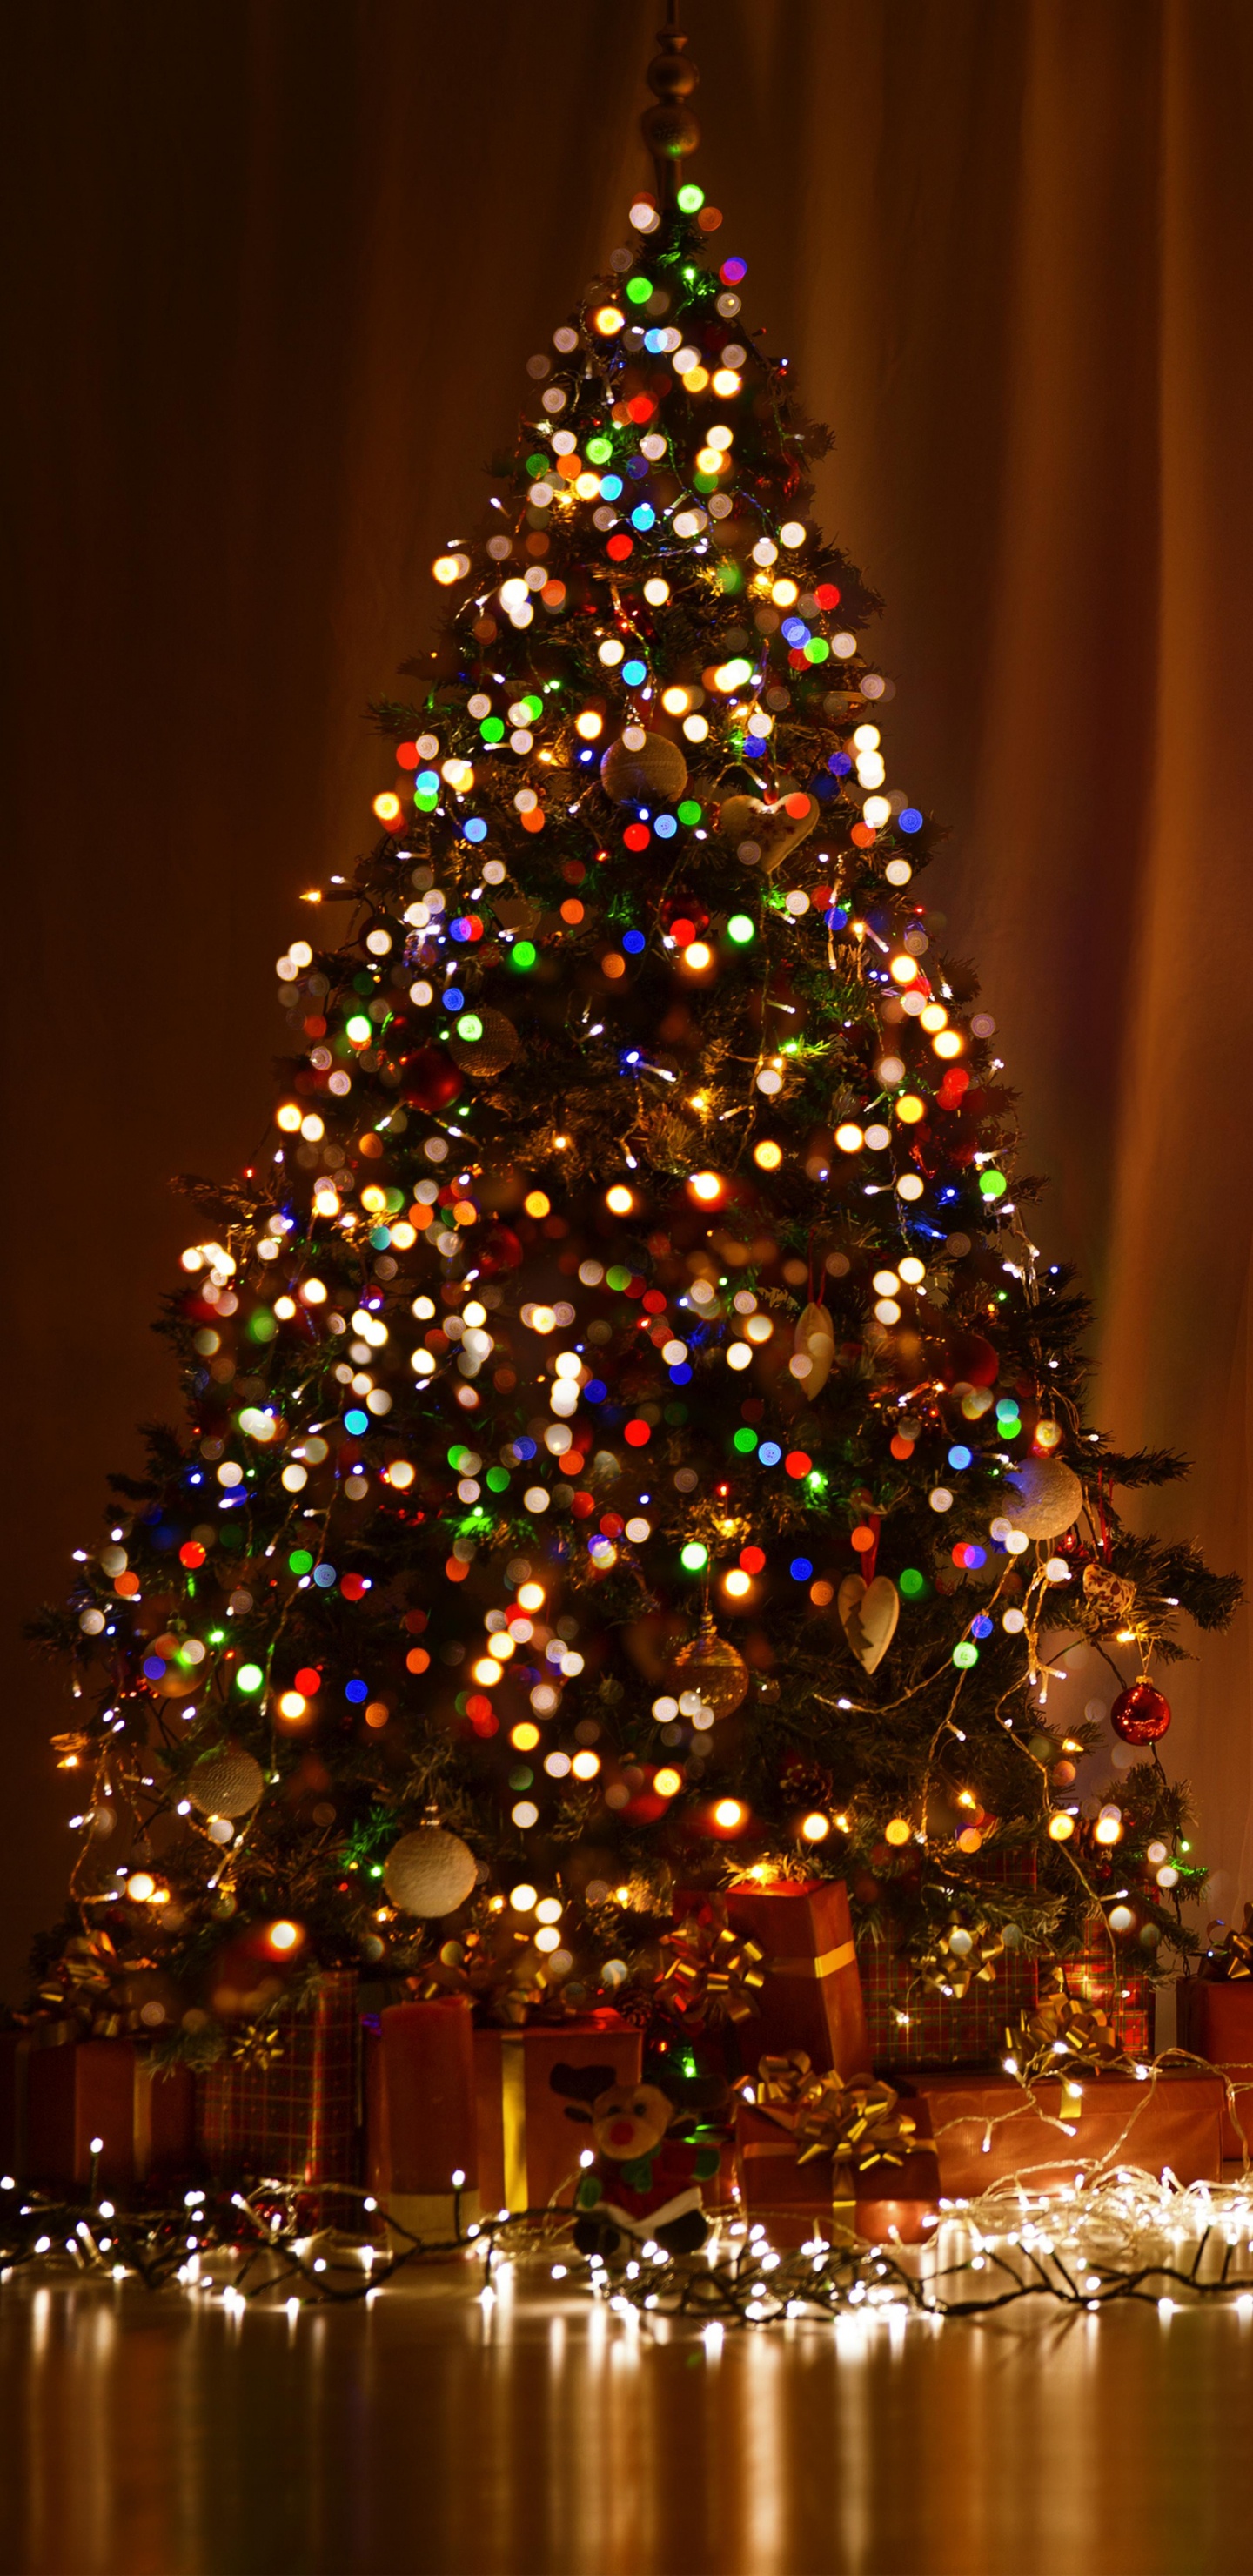 Weihnachten, Weihnachtsbaum, Weihnachtsbeleuchtung, Weihnachtsdekoration, Christmas Ornament. Wallpaper in 1440x2960 Resolution